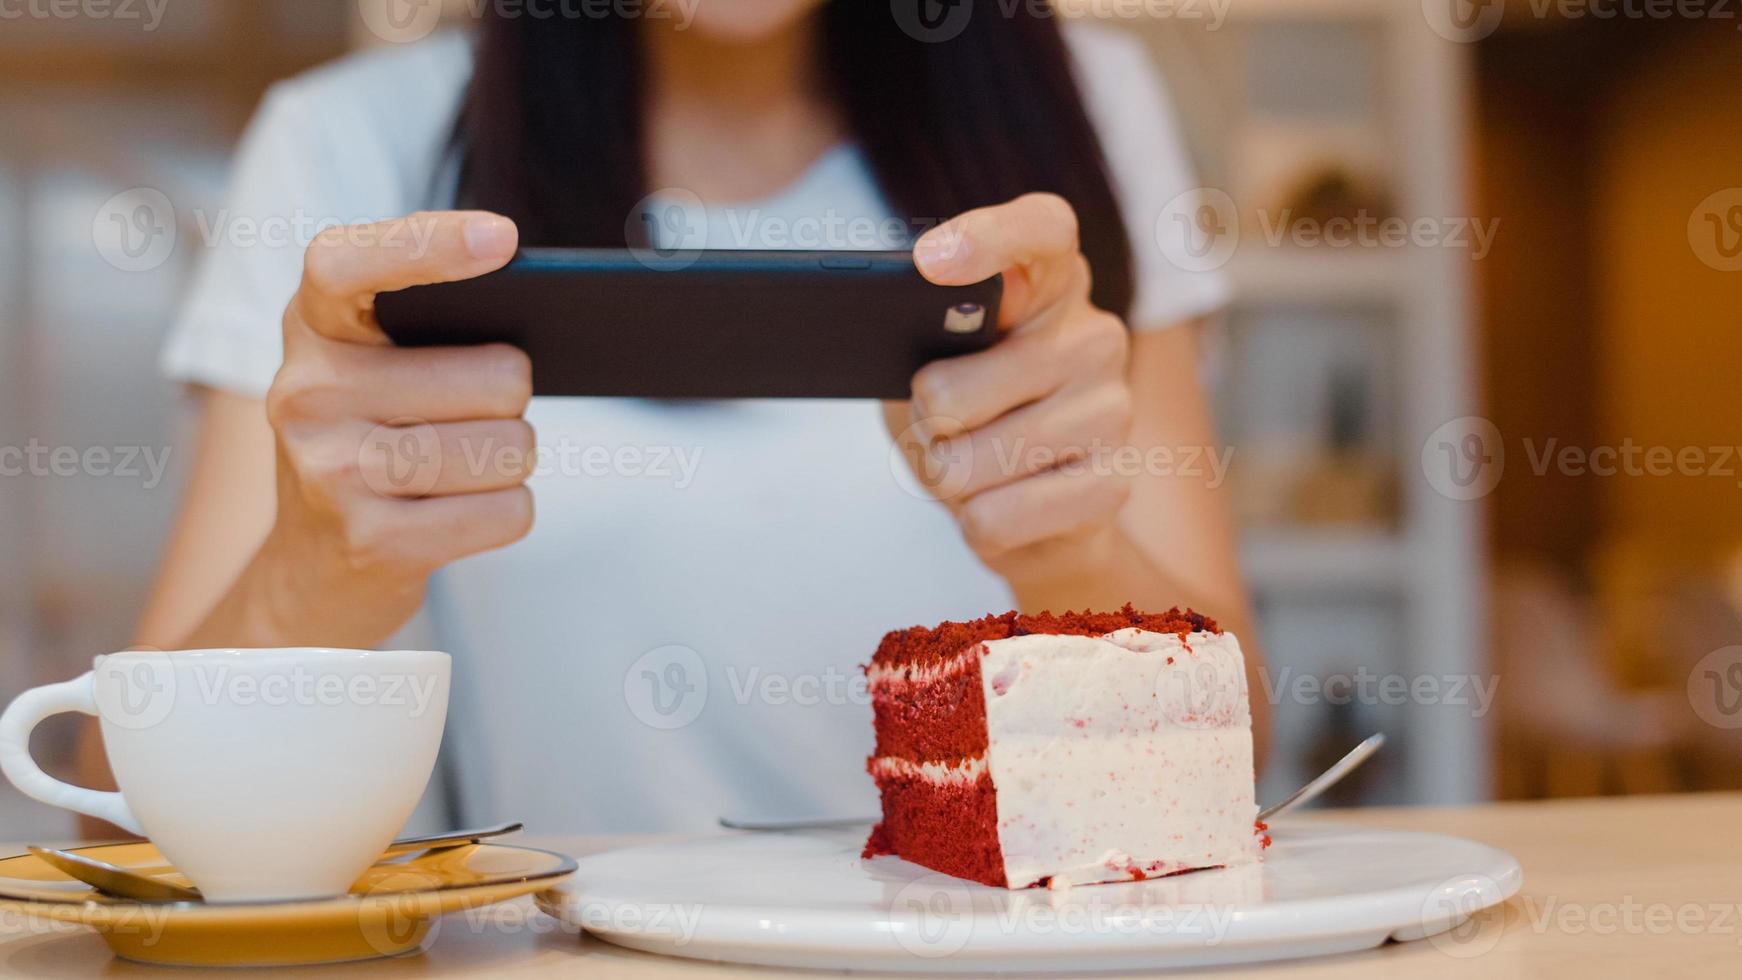 blogueuse influenceuse asiatique amicale mange un gâteau au café de nuit. belle jeune femme heureuse se détendre en utilisant la technologie téléphone mobile en prenant une photo de son téléchargement de nourriture dans les médias sociaux sur le campus universitaire.